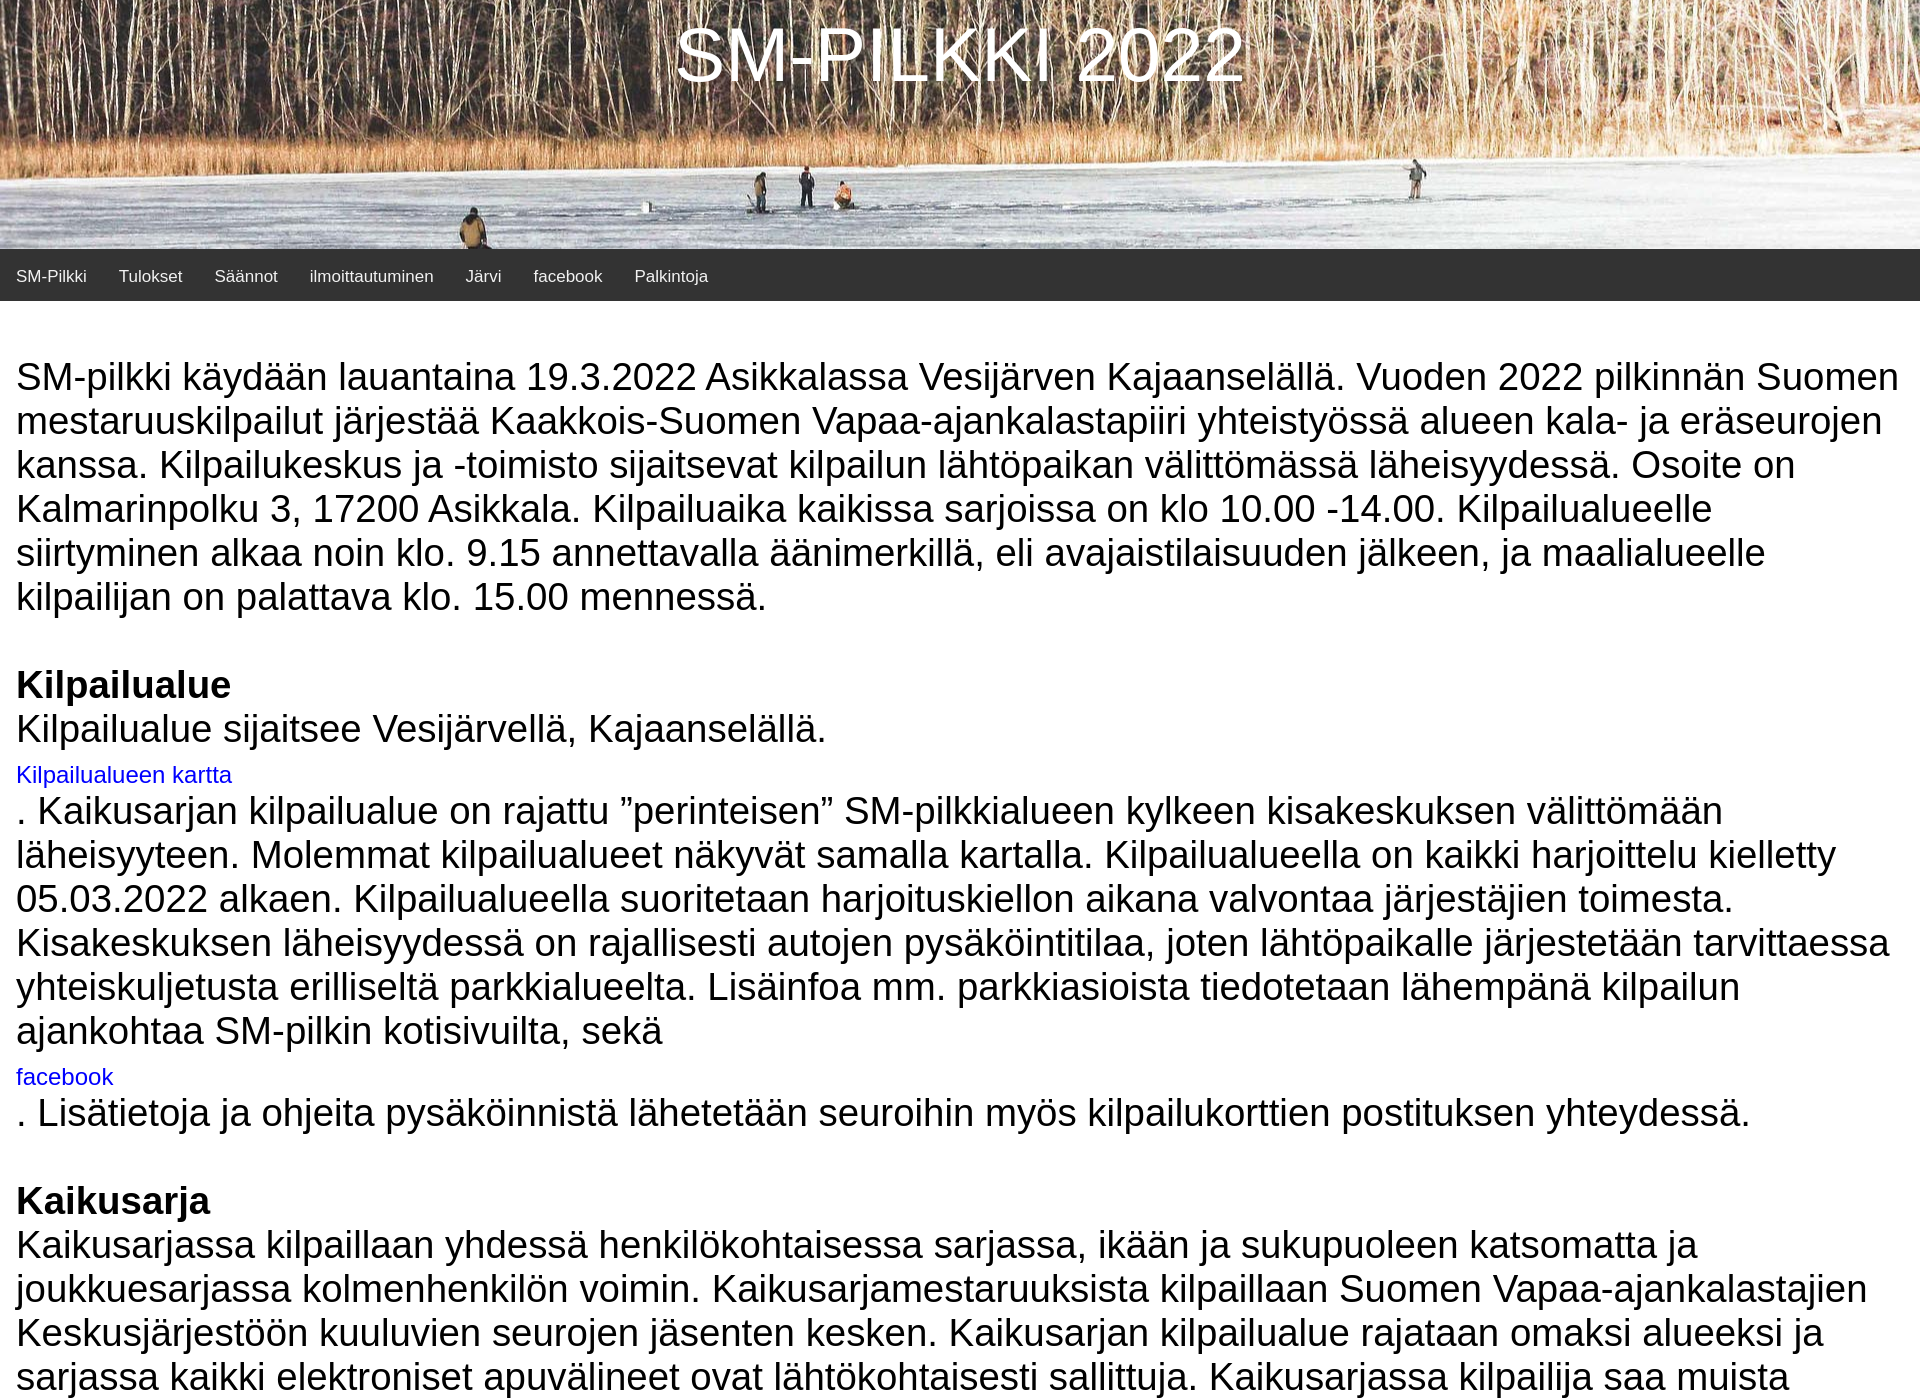 Näyttökuva smpilkki2022.fi